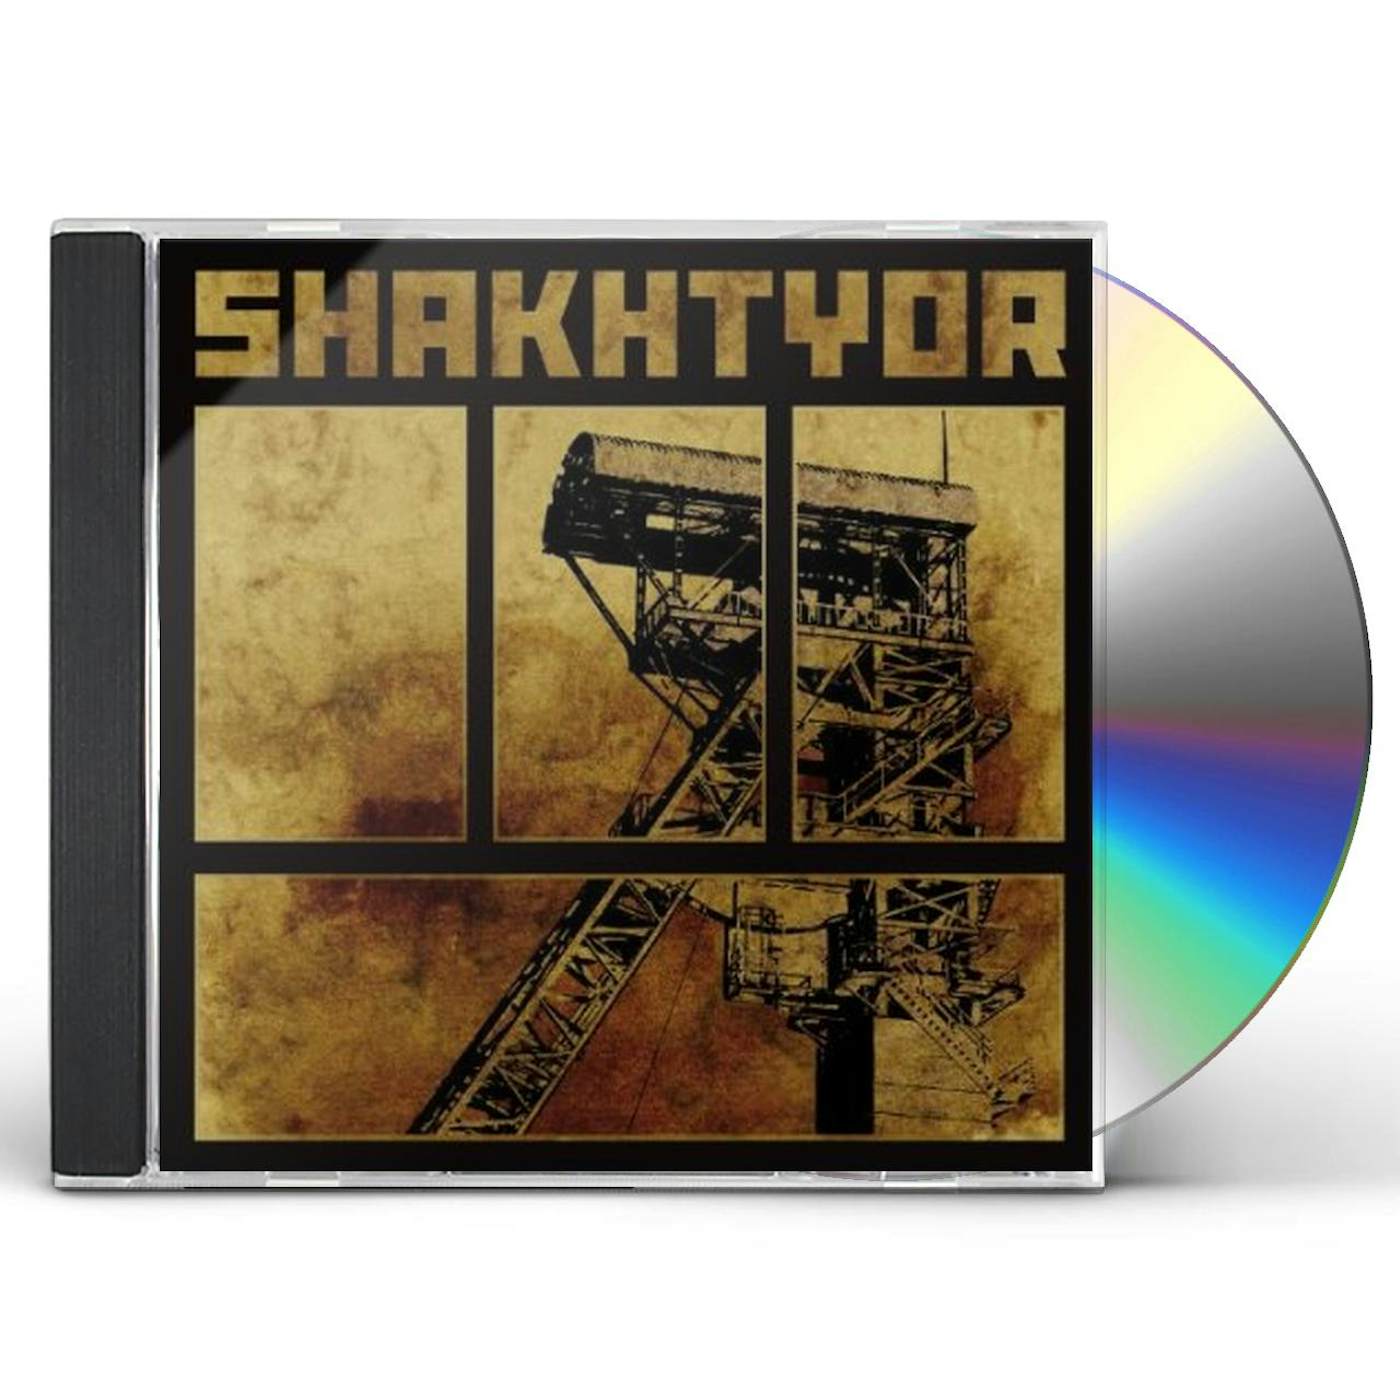 SHAKHTYOR CD